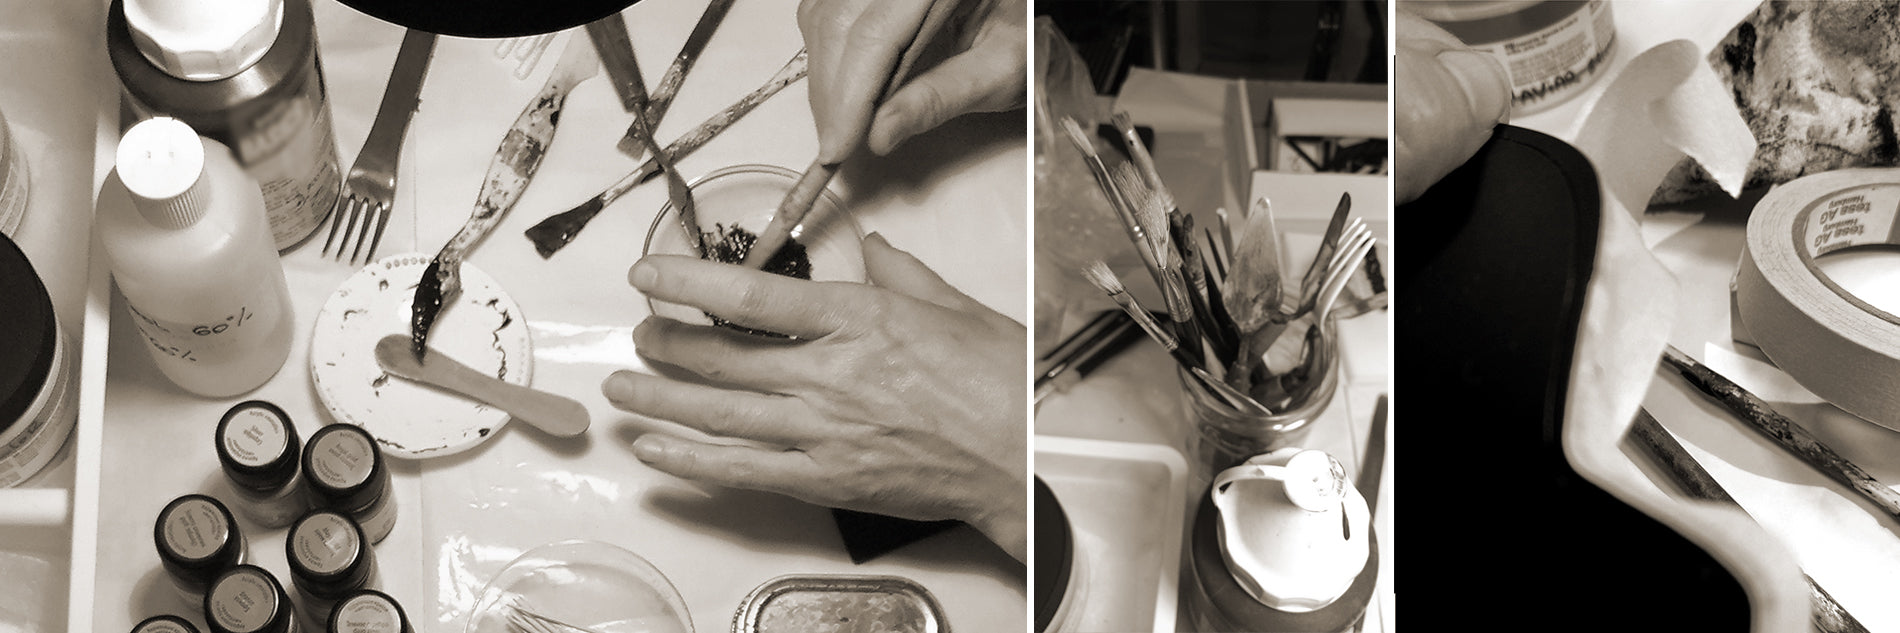 Alex+Svet modern jewelry workshop hand craft